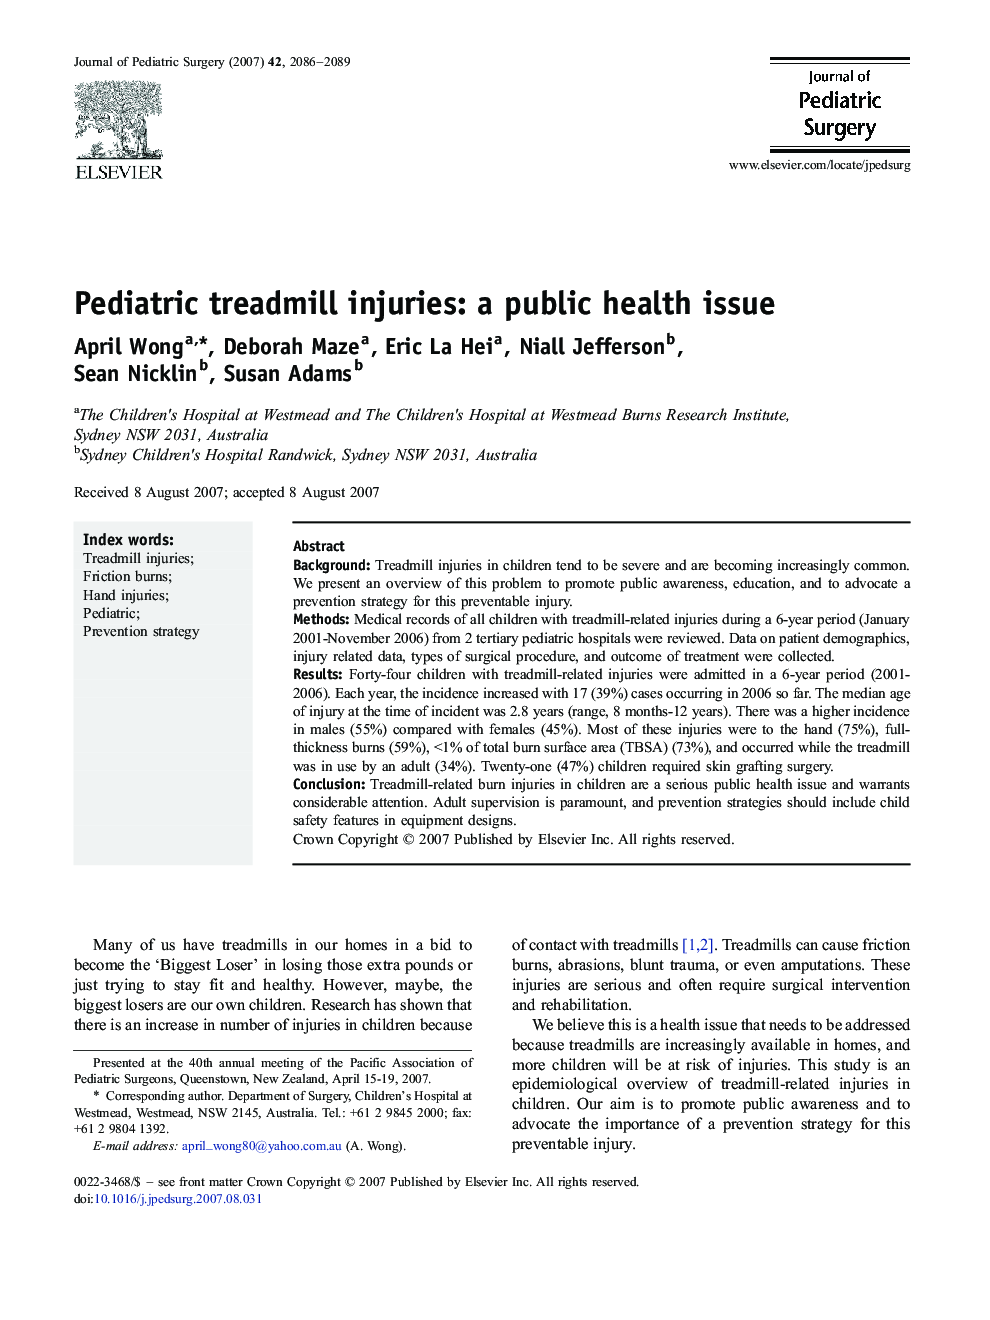 Pediatric treadmill injuries: a public health issue 